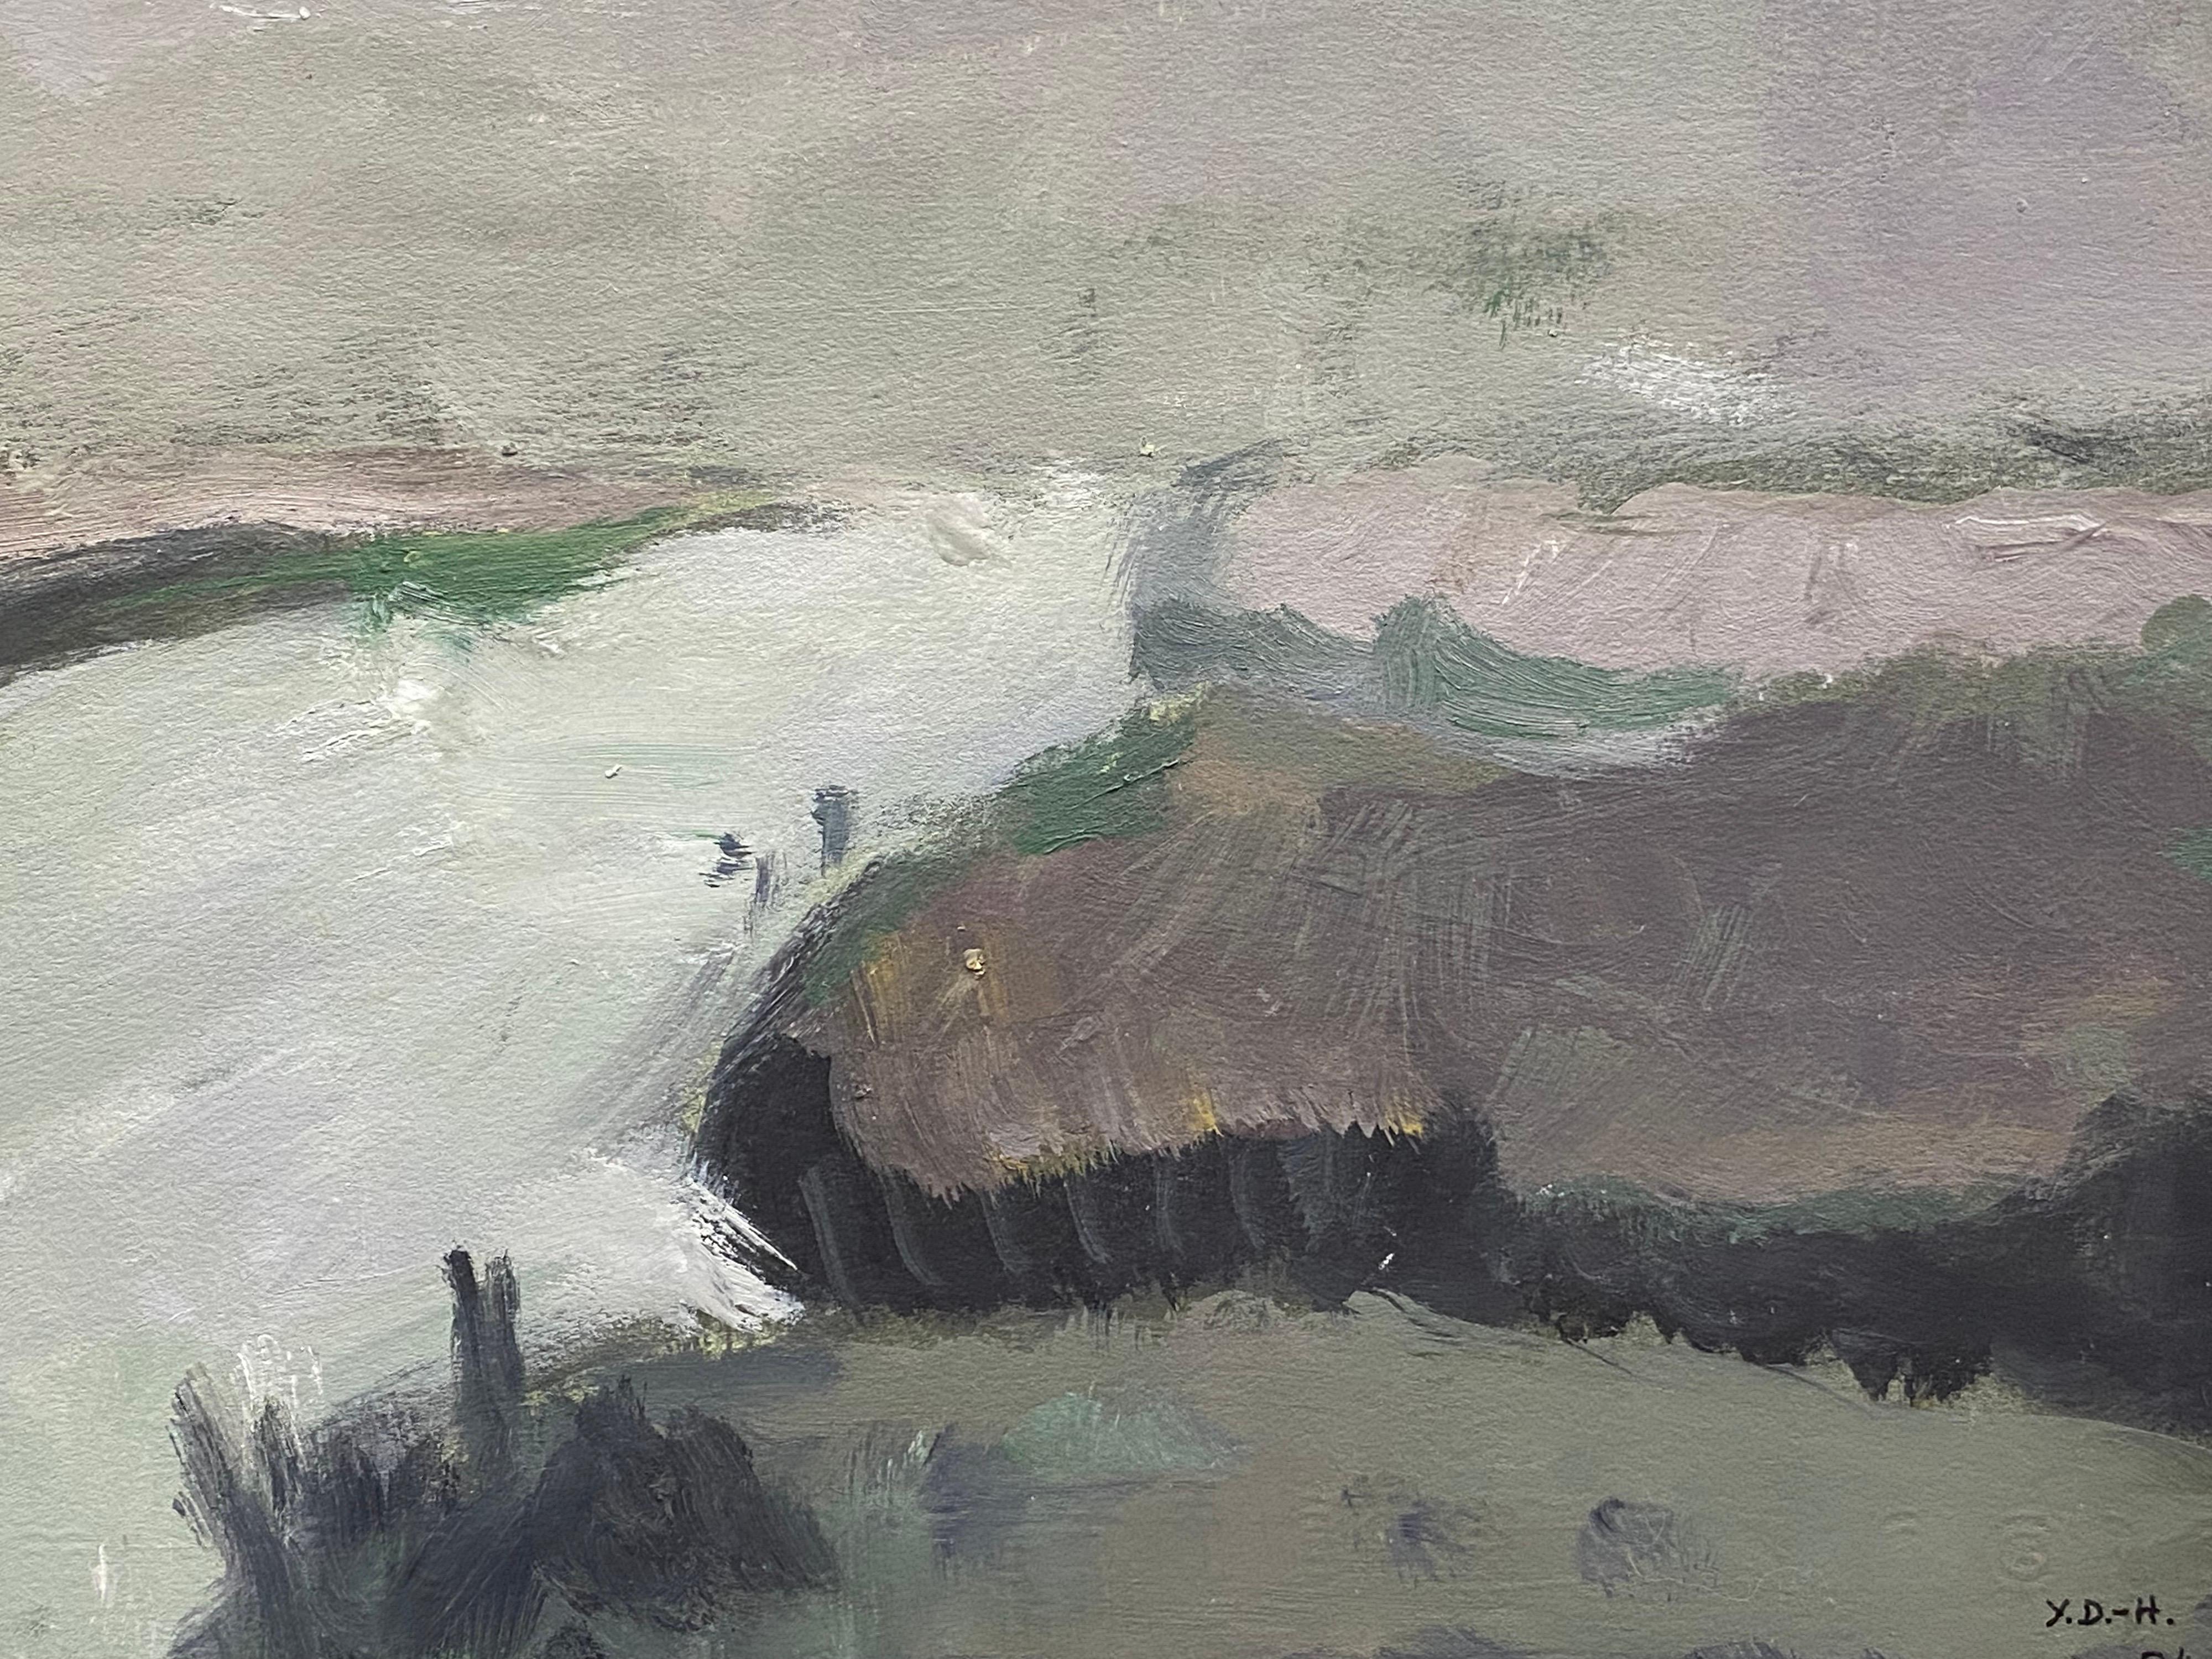  Abstraktes Ölgemälde des französischen Expressionismus - Fluss-Landschaft – Painting von Yvette Dubois Habasque